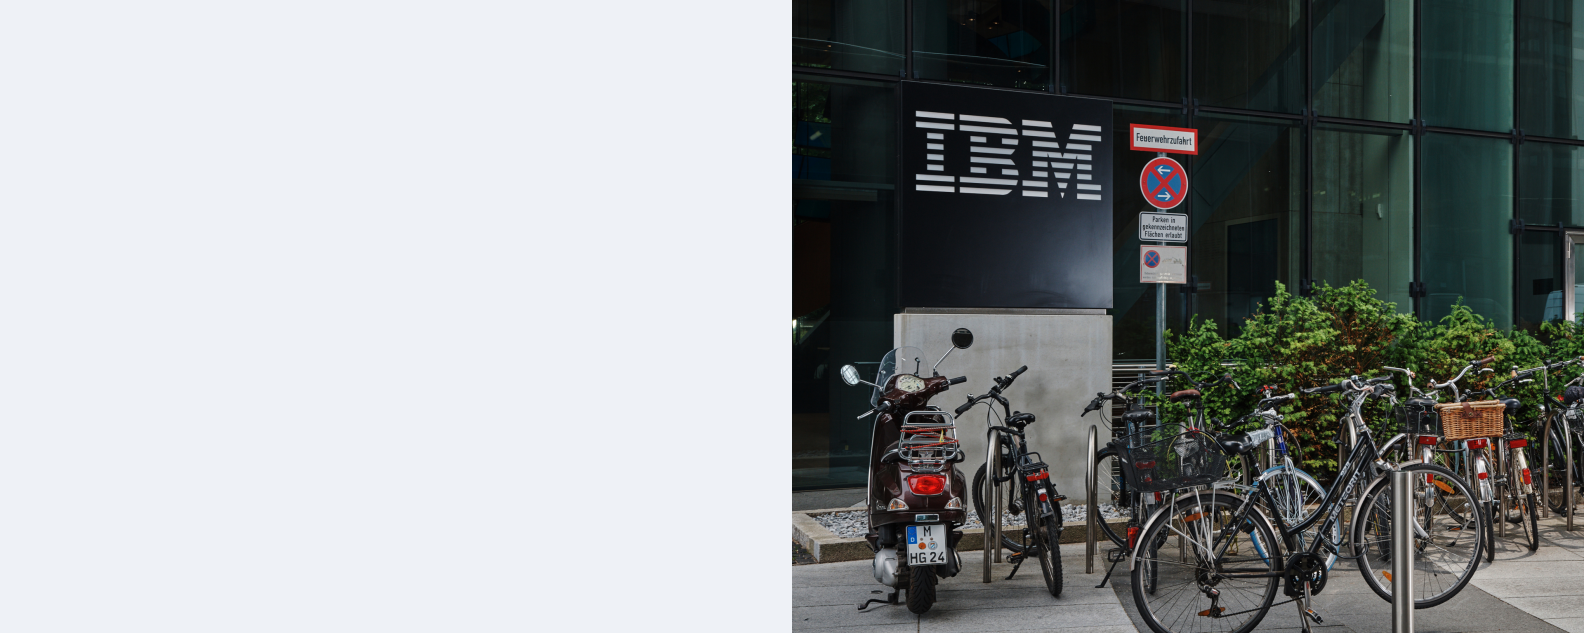 IBM Munich - exterior